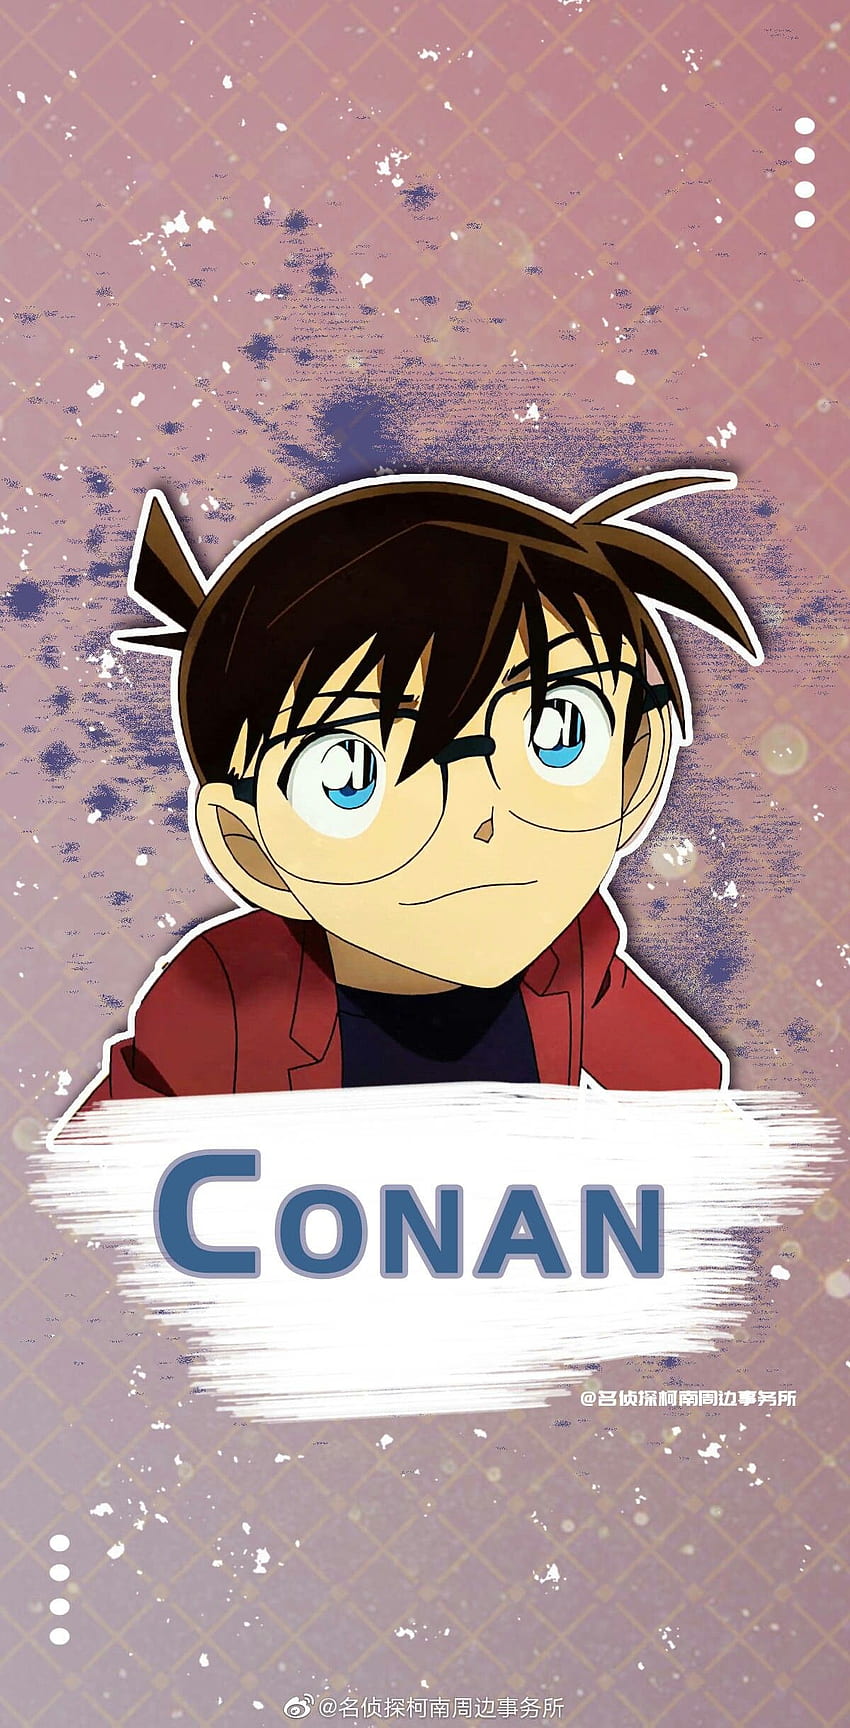 Hình Nền Fan Conan | TikTok